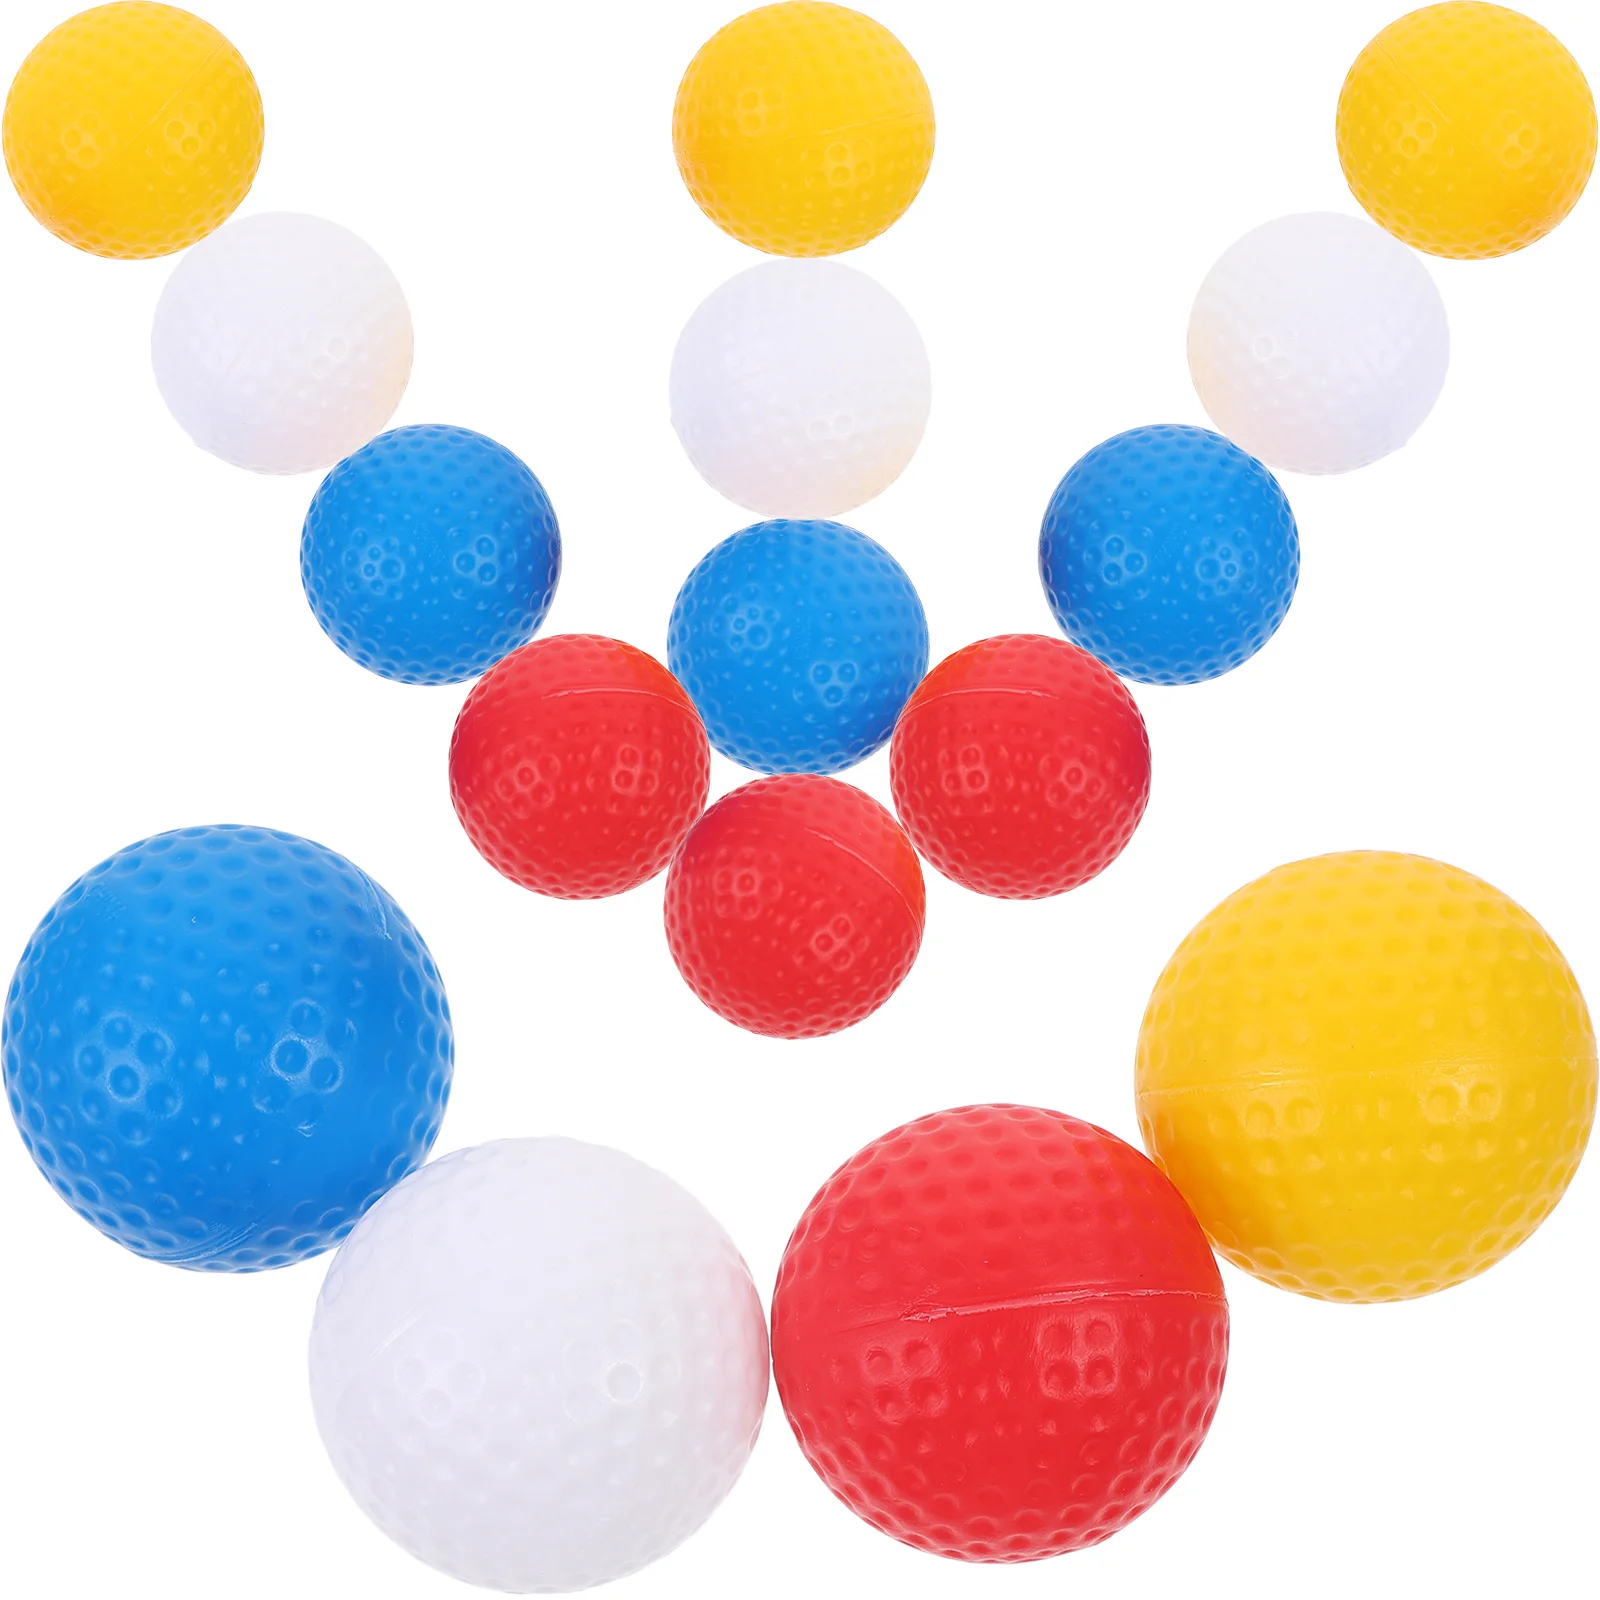 Мячи для игры в гольф, Цветные мячи для гольфа, маленькие мячи для гольфа, портативные мячи для игры в гольф